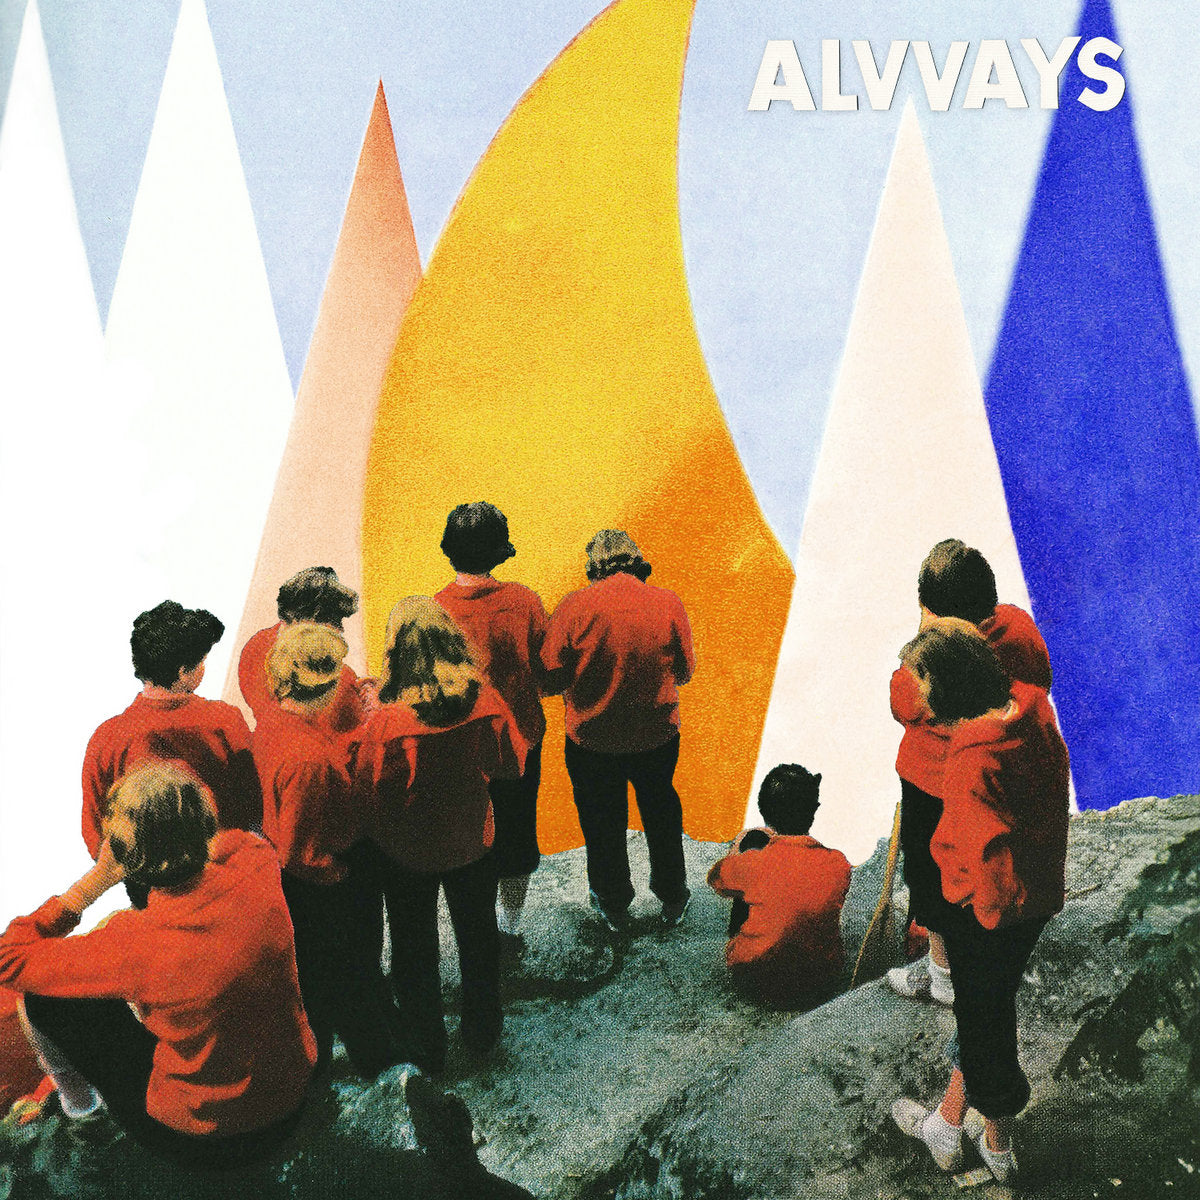 Alvvays “Antisocialites” Digipak CD (2017)